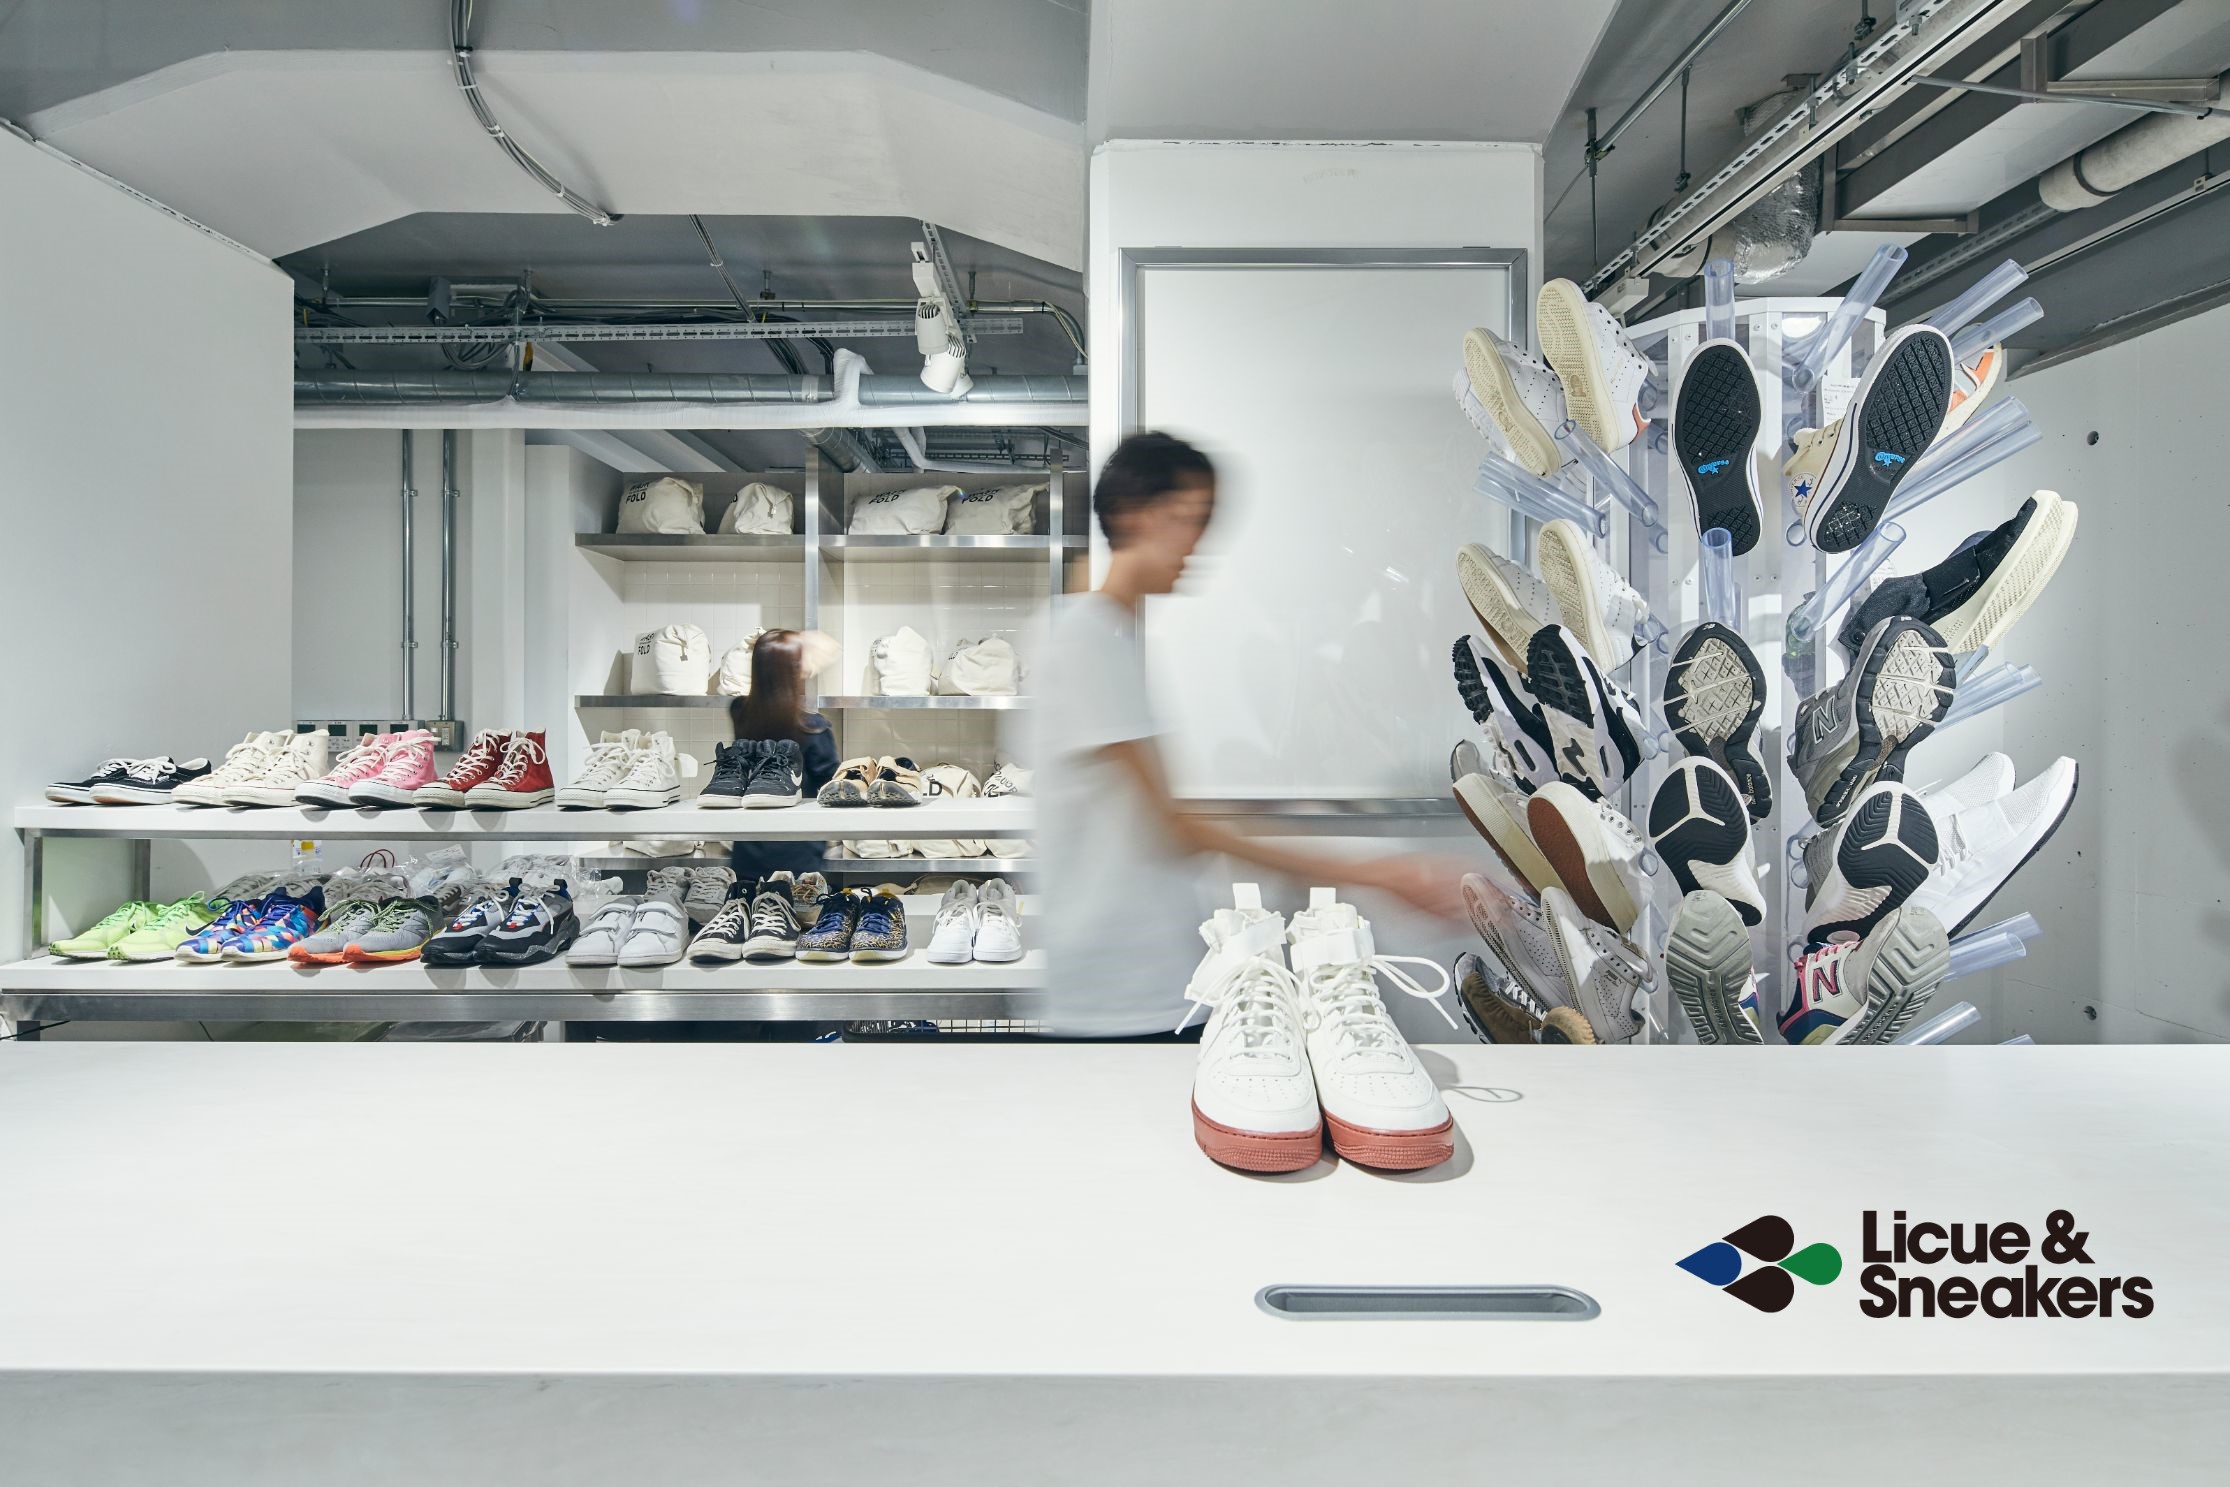 スニーカーウォッシュ専門店「Licue & Sneakers」が期間限定で& DICE & DICEに登場、アーティストによるインスタレーションも